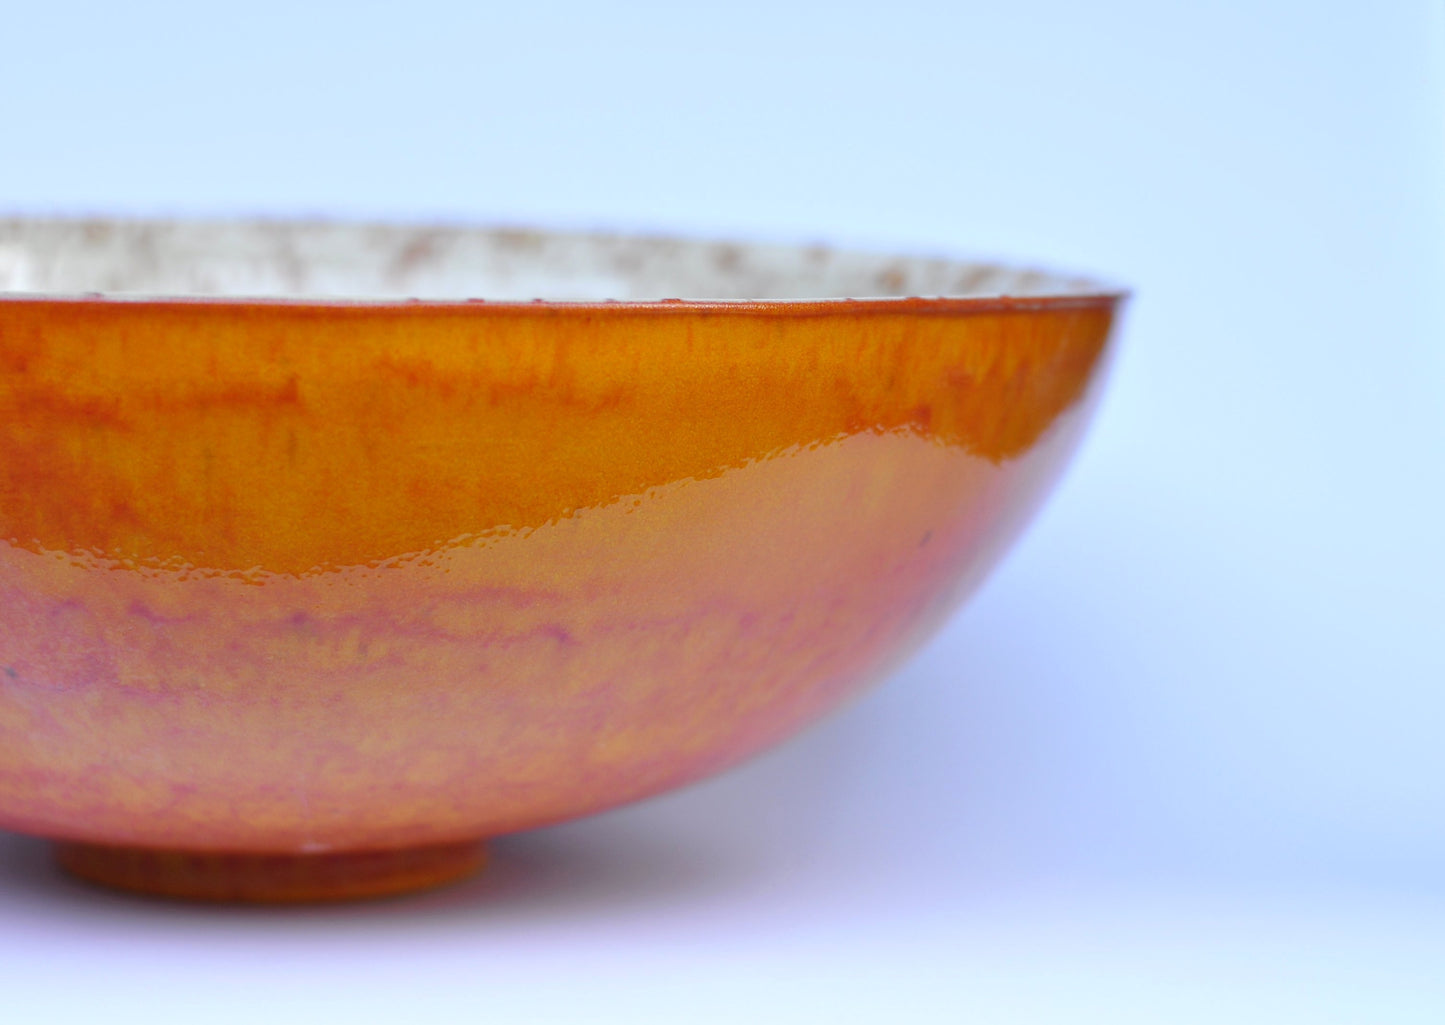 Handmade Ceramic sink Waschbecken Lavabo - Orange